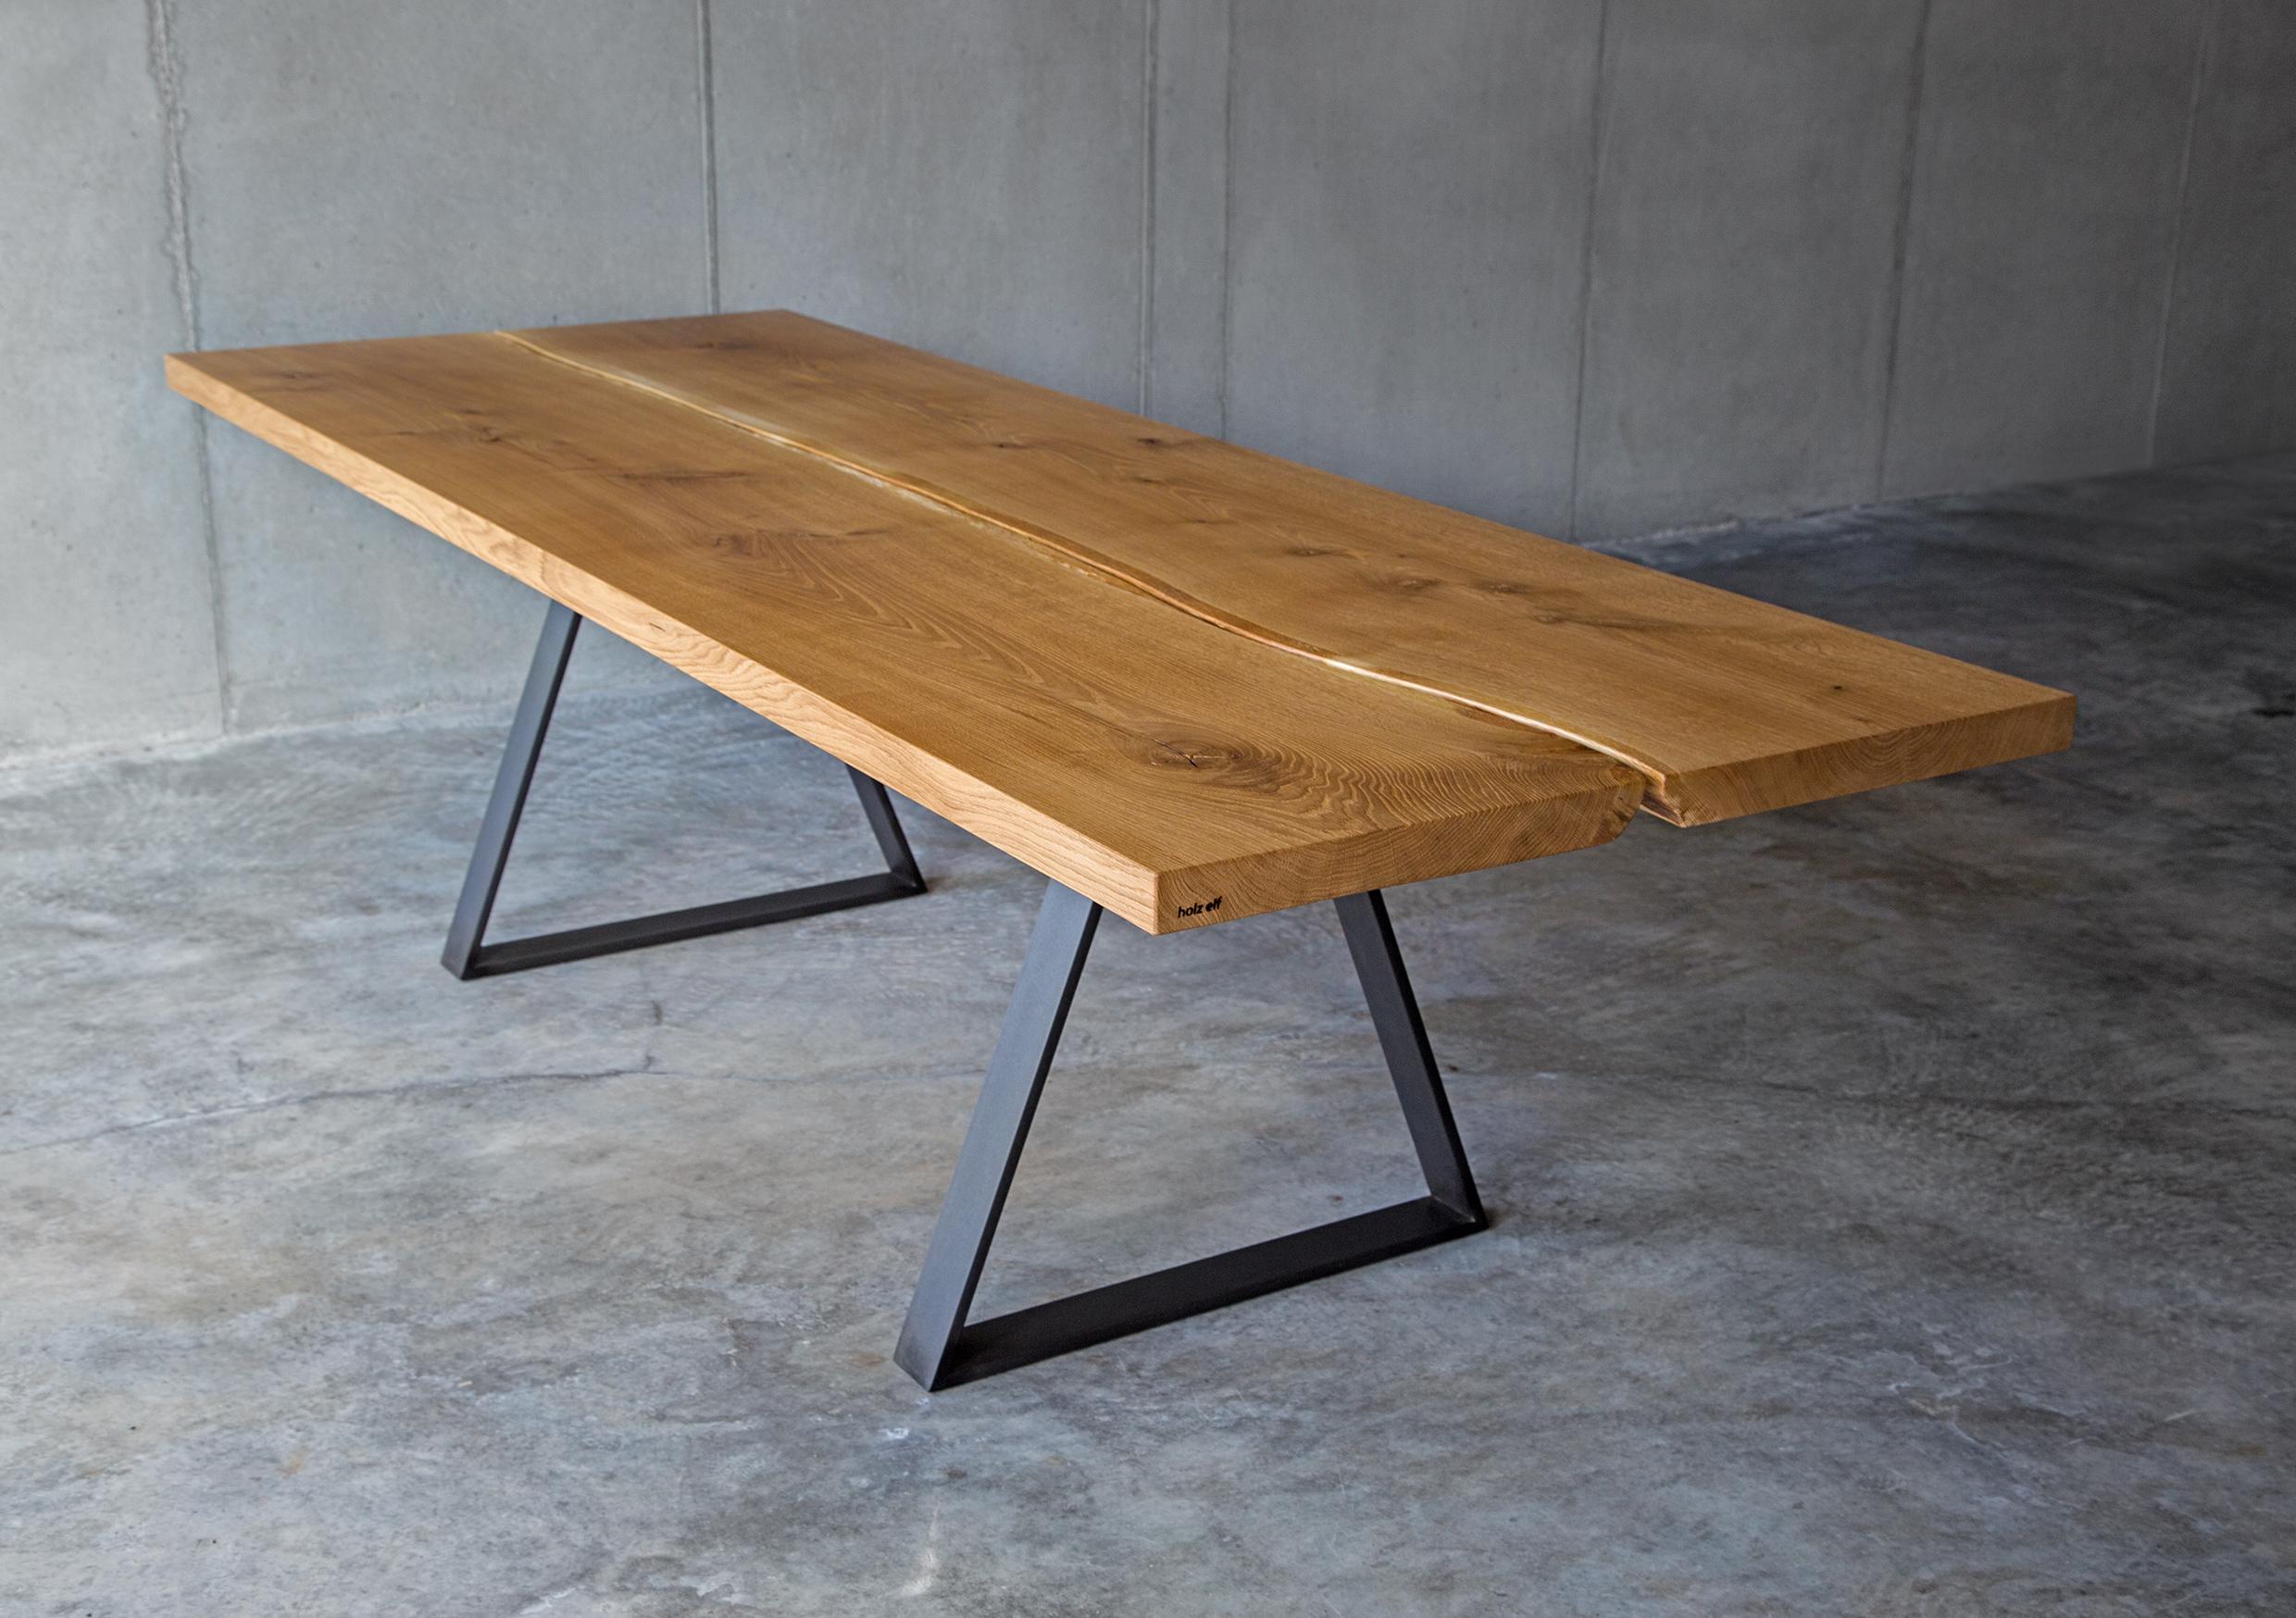 Dieser maßgefertigte German Design Award WINNER Tisch mit lebendiger Baumkante wird immer aus zwei Stücken aus dem Stamm einer mächtigen Eiche gefertigt. Dem Eichenholz sollte nichts genommen werden. Die natürliche Baumkante in der Tischmitte